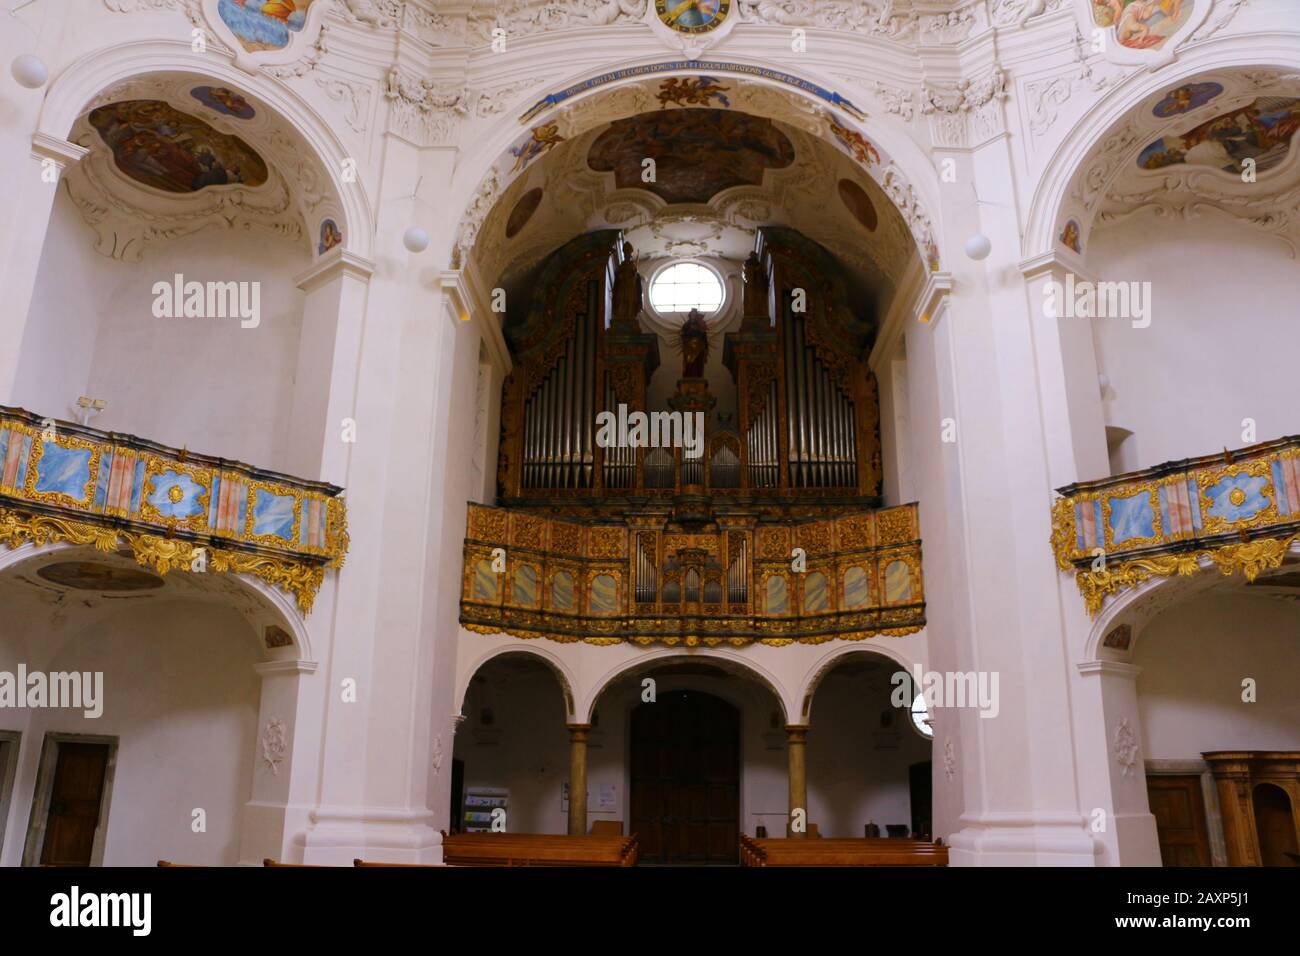 Im Innenraum der Klosterkirche von Kloster Muri in der Schweiz Stock Photo